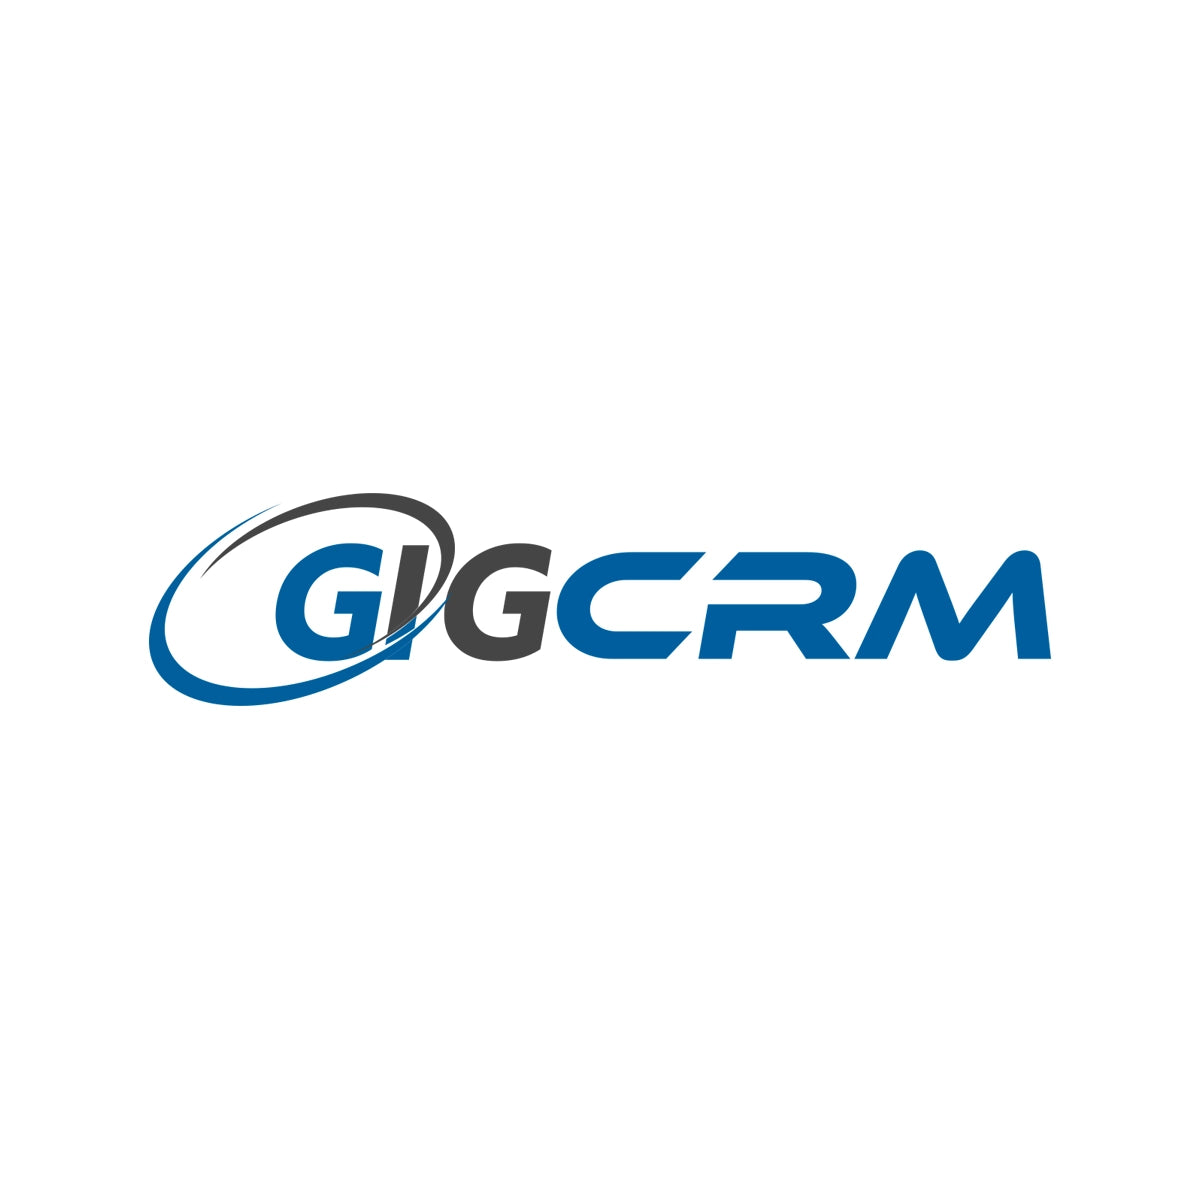 gigcrm.com